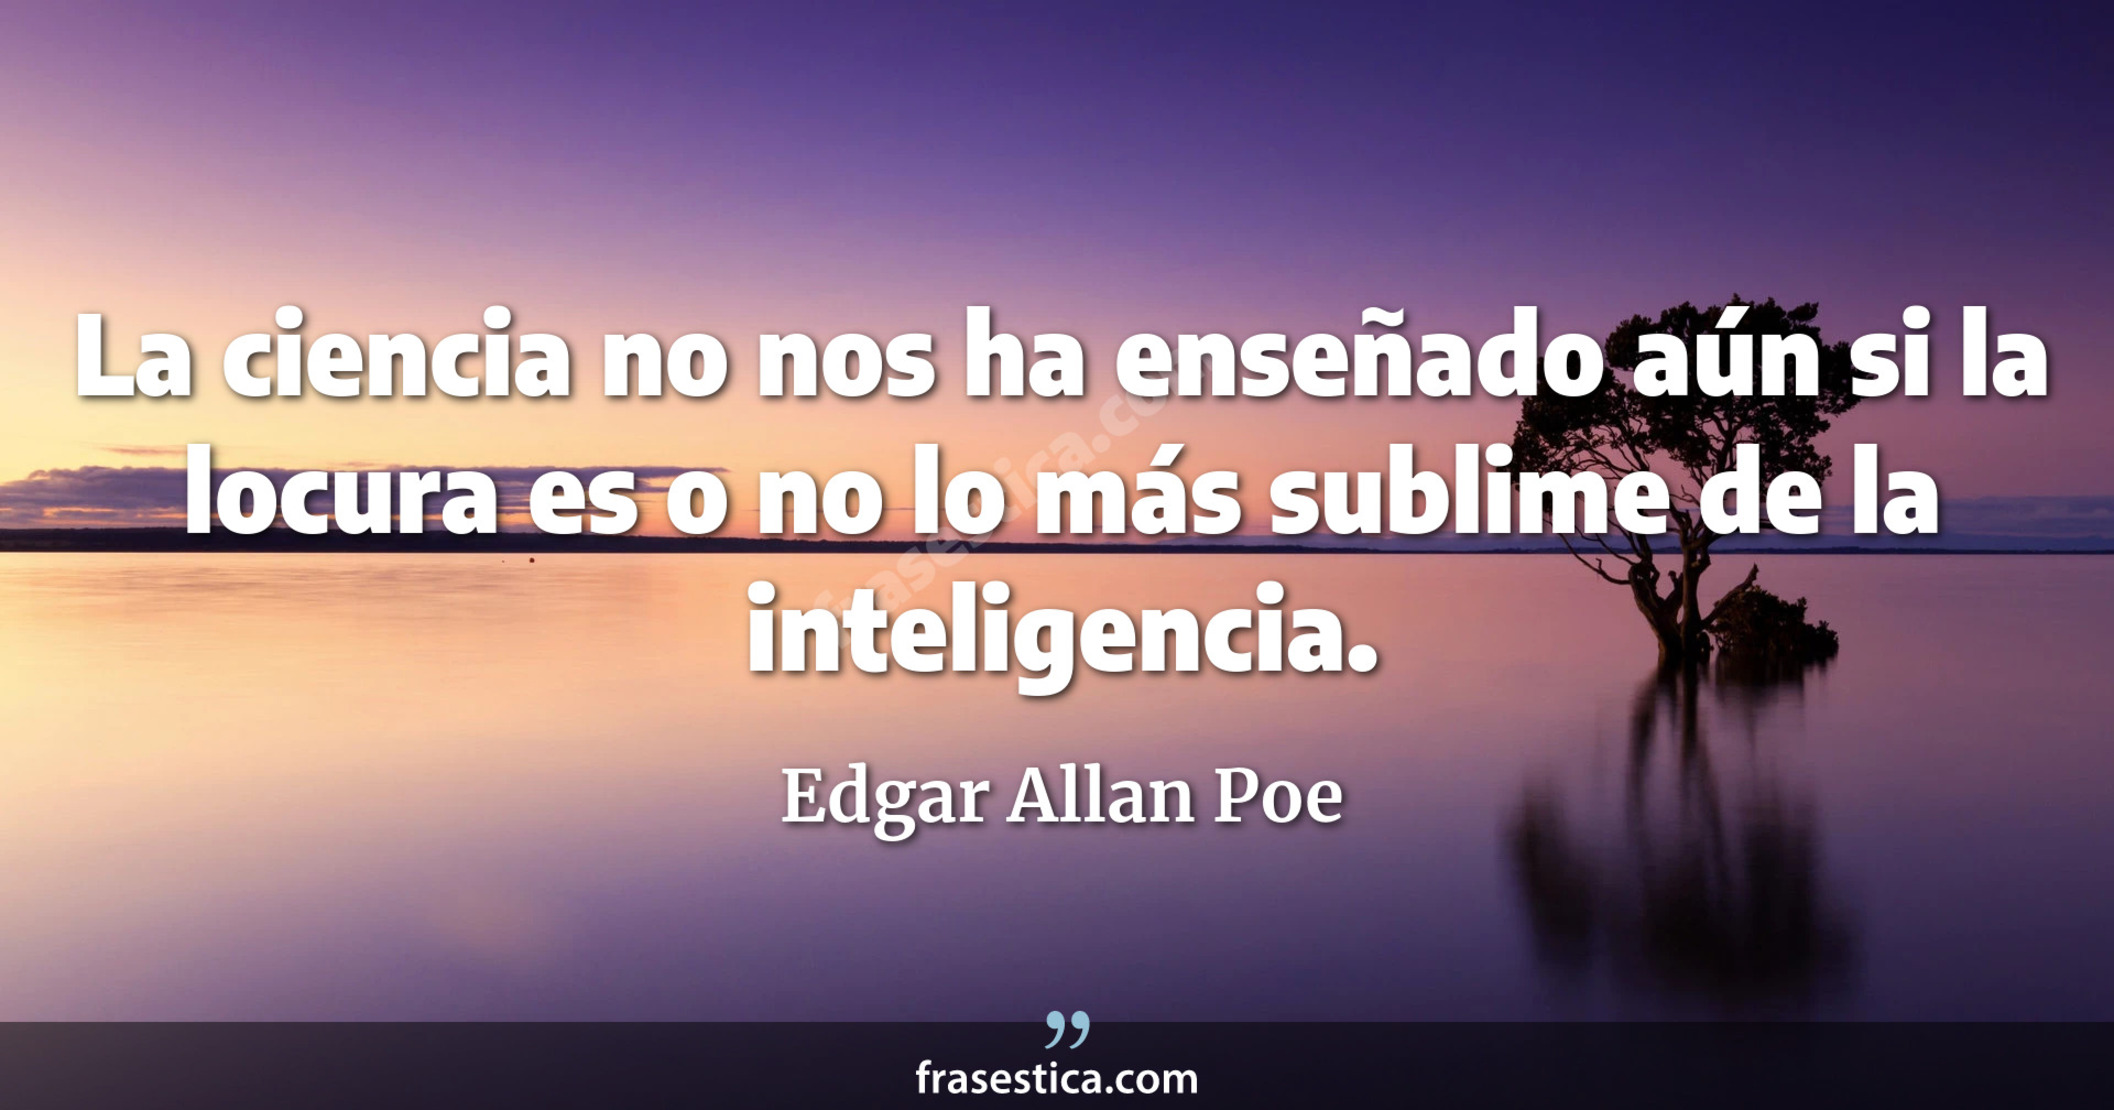 La ciencia no nos ha enseñado aún si la locura es o no lo más sublime de la inteligencia. - Edgar Allan Poe